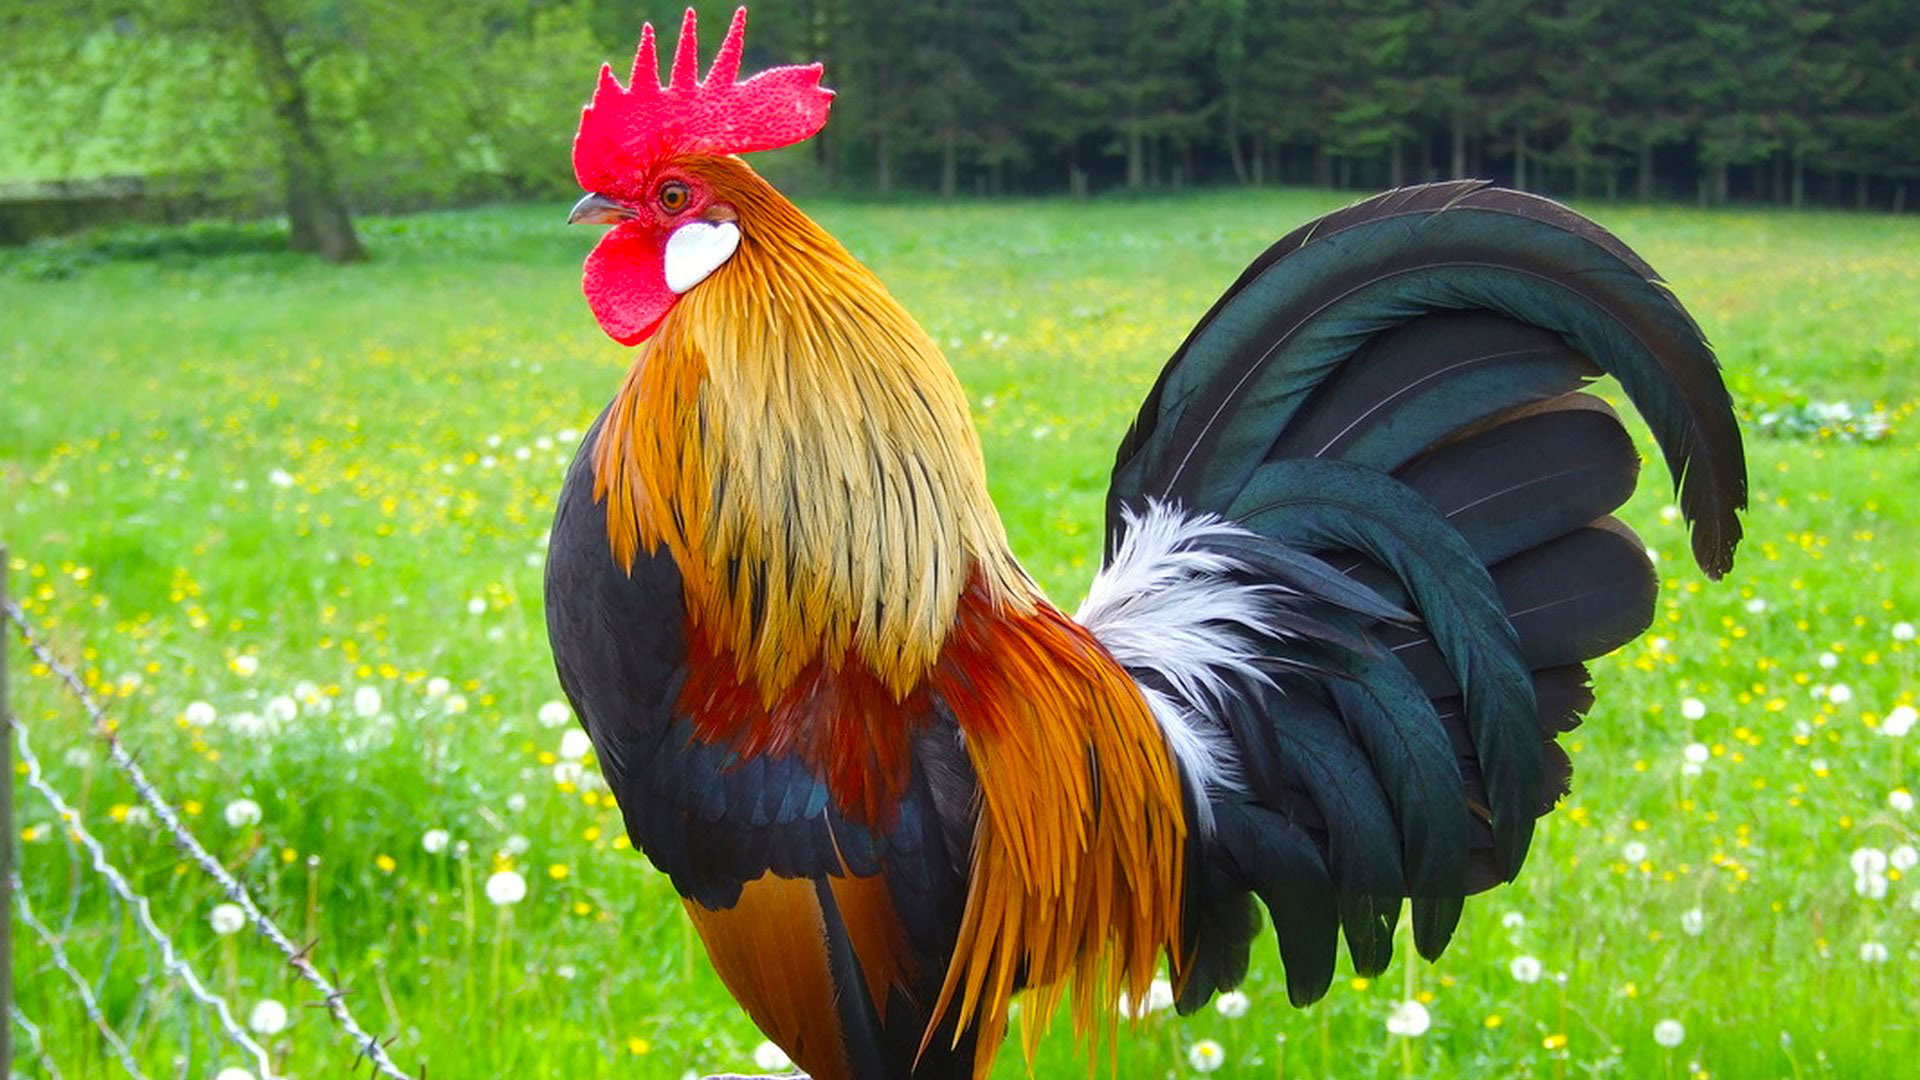 Rooster - Hình chú gà trống - PLUZZLE.VN